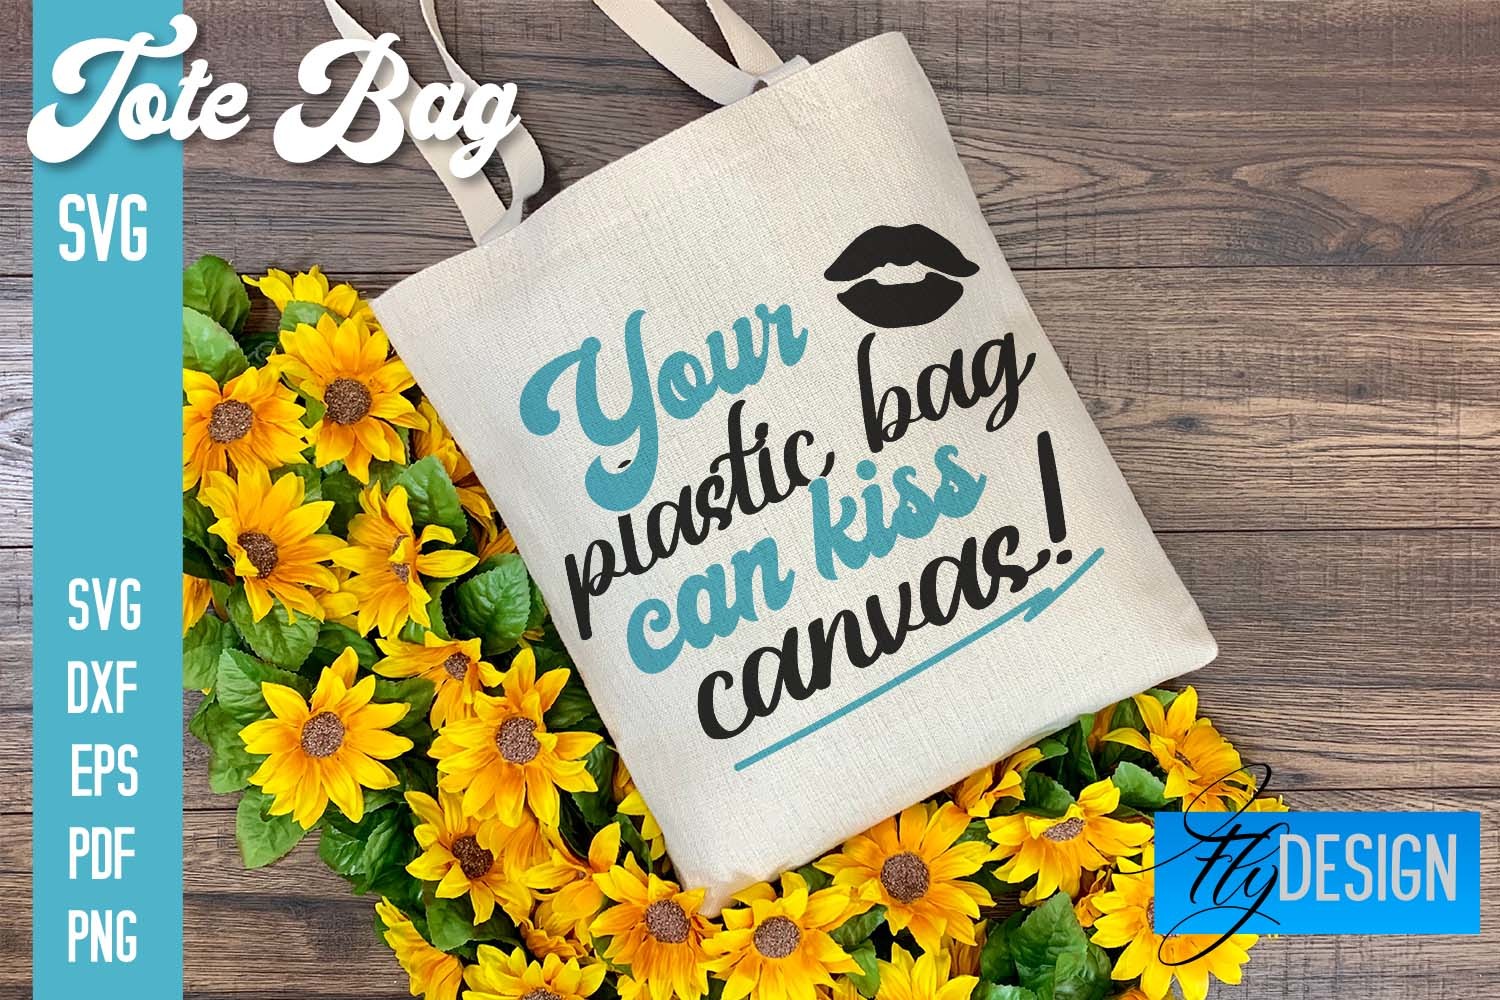 Tote Bag SVG | Shopping Bag Design | Bag Graphic by flydesignsvg ...